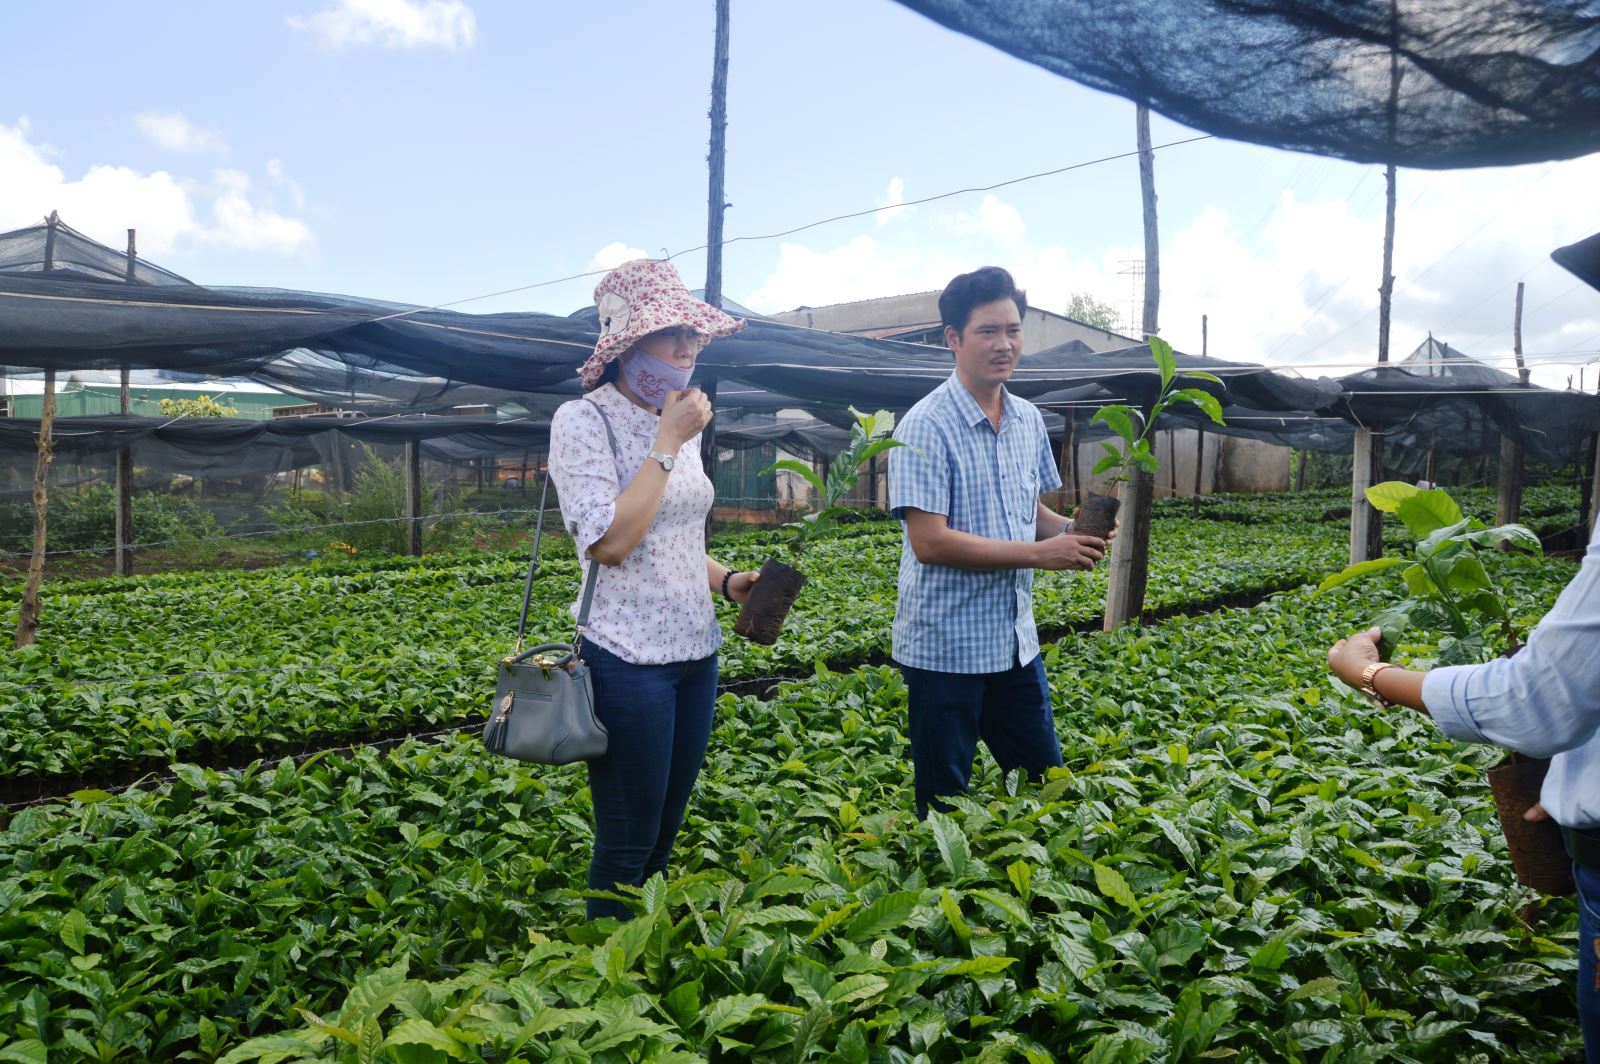 Article Hiệu quả tích cực từ triển khai dự án “hỗ trợ chương trình tái canh cà phê” ở huyện Ia Grai